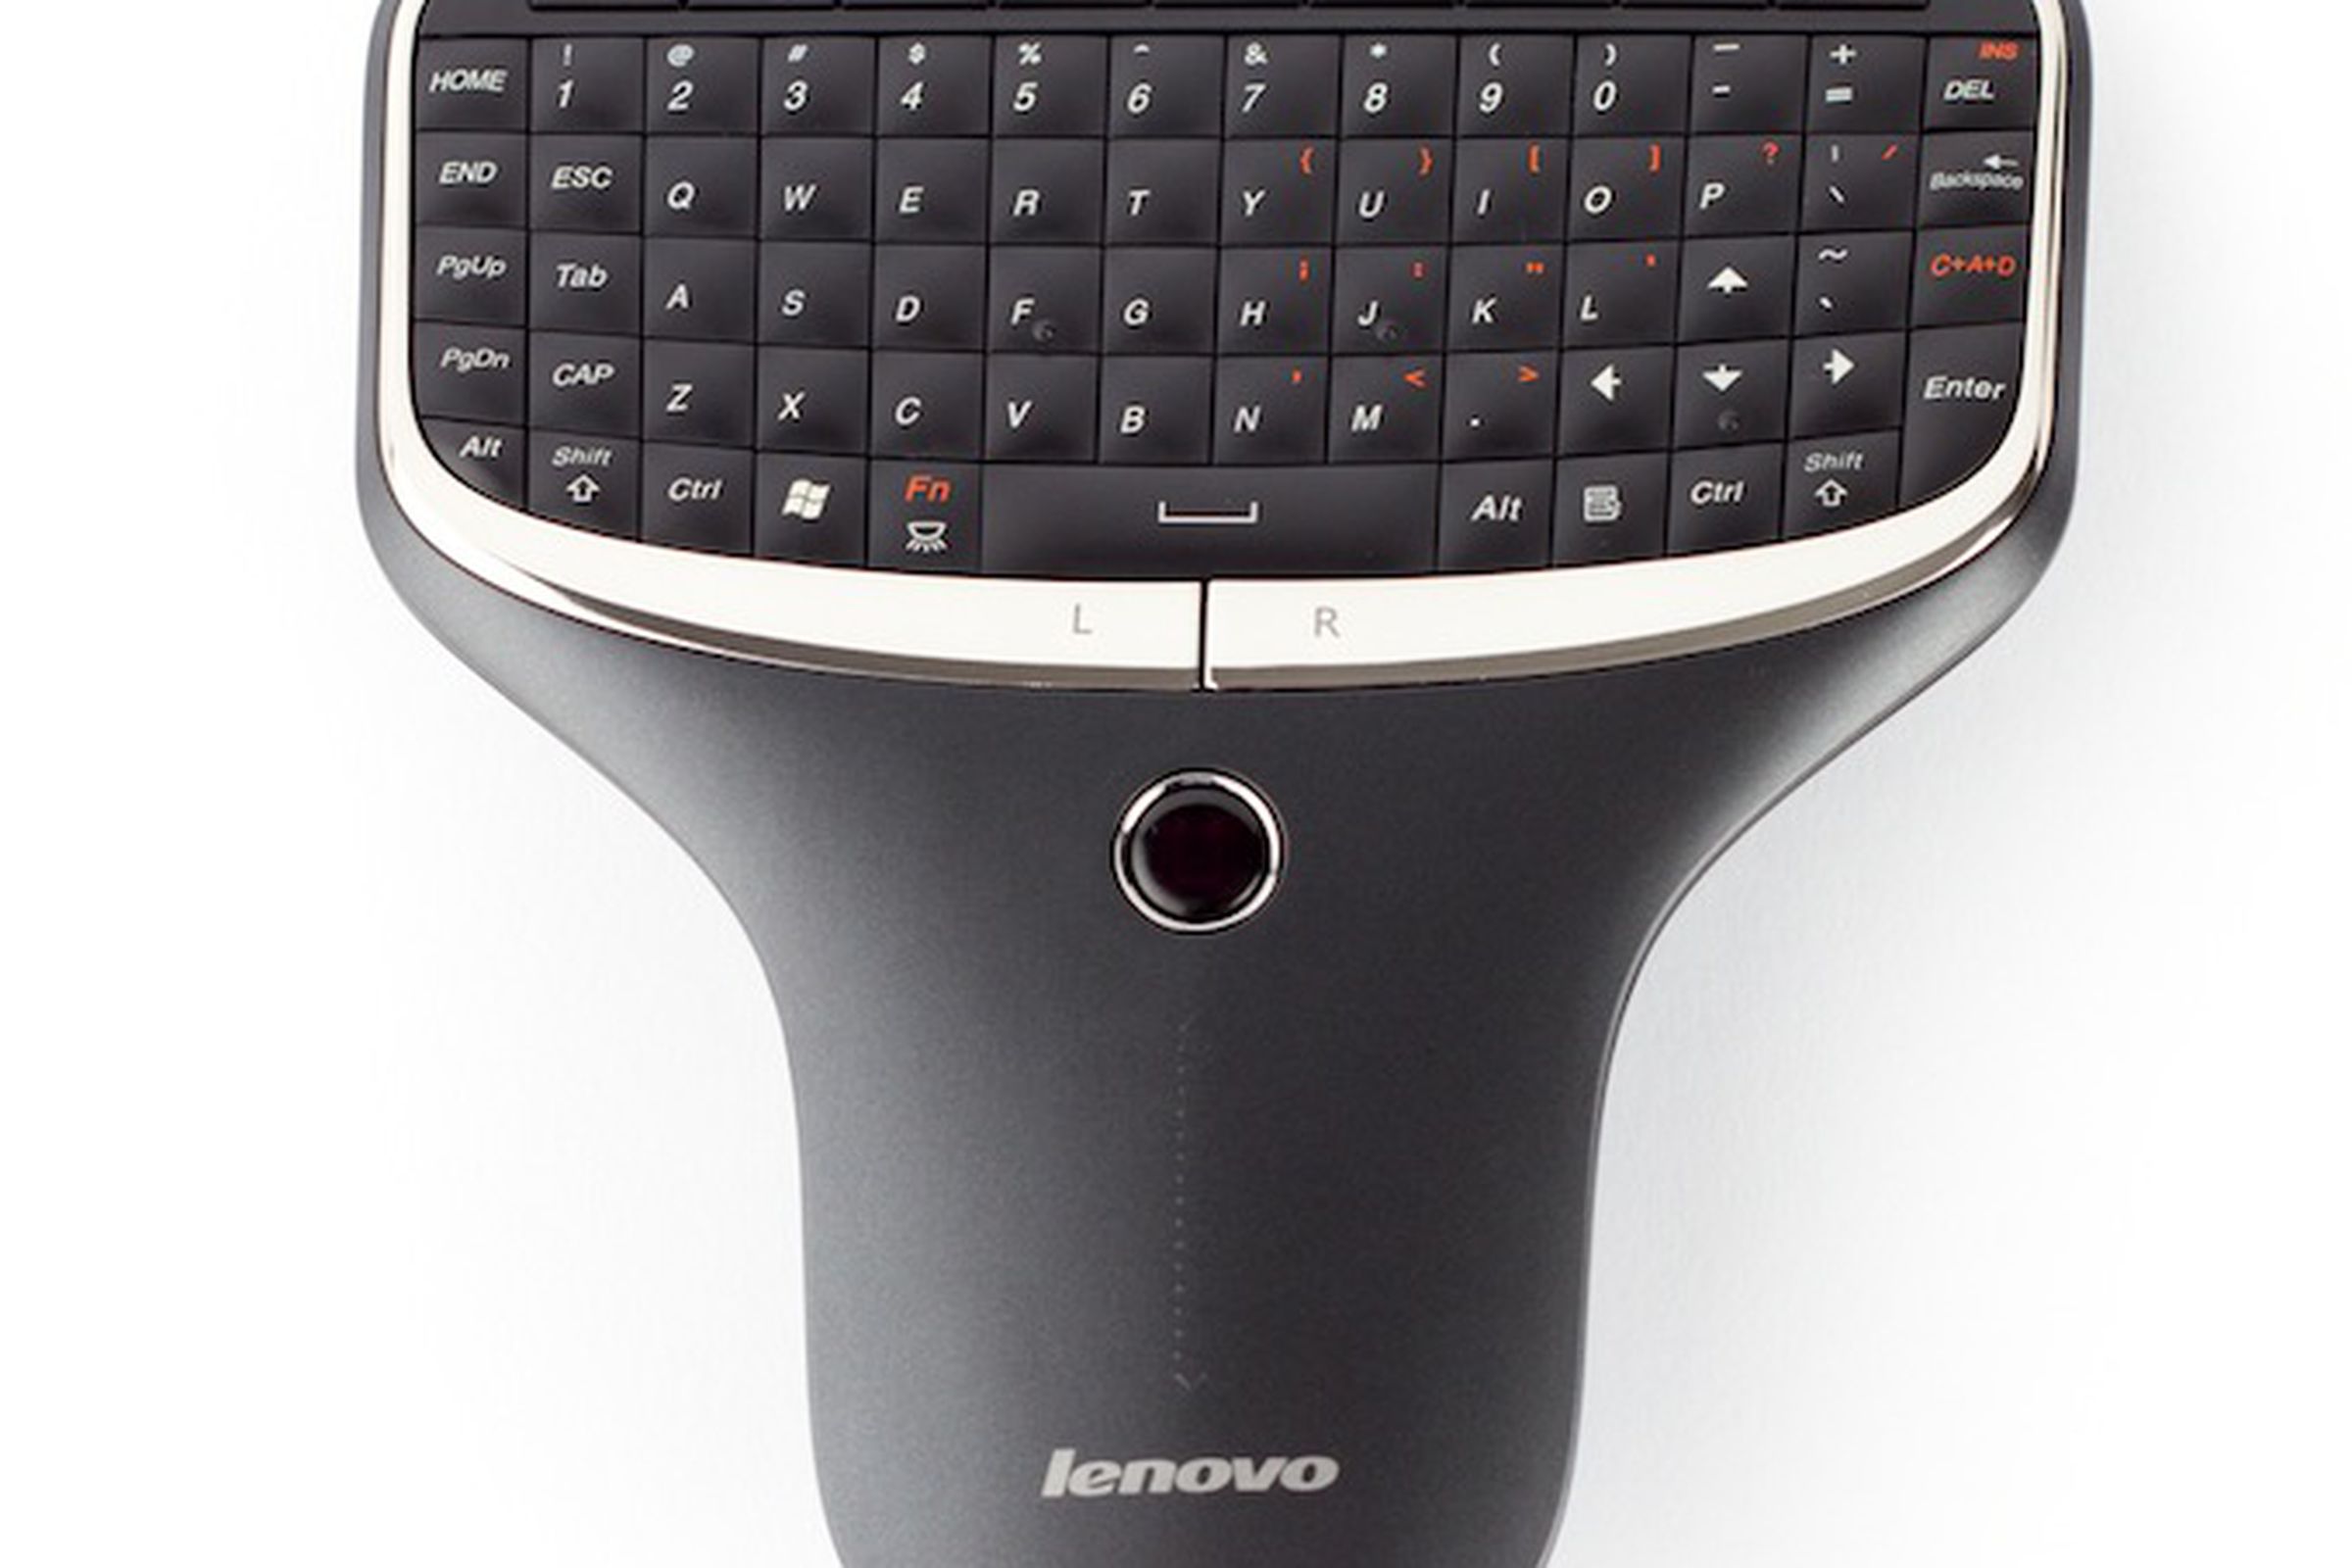 Lenovo Home Theater Remote